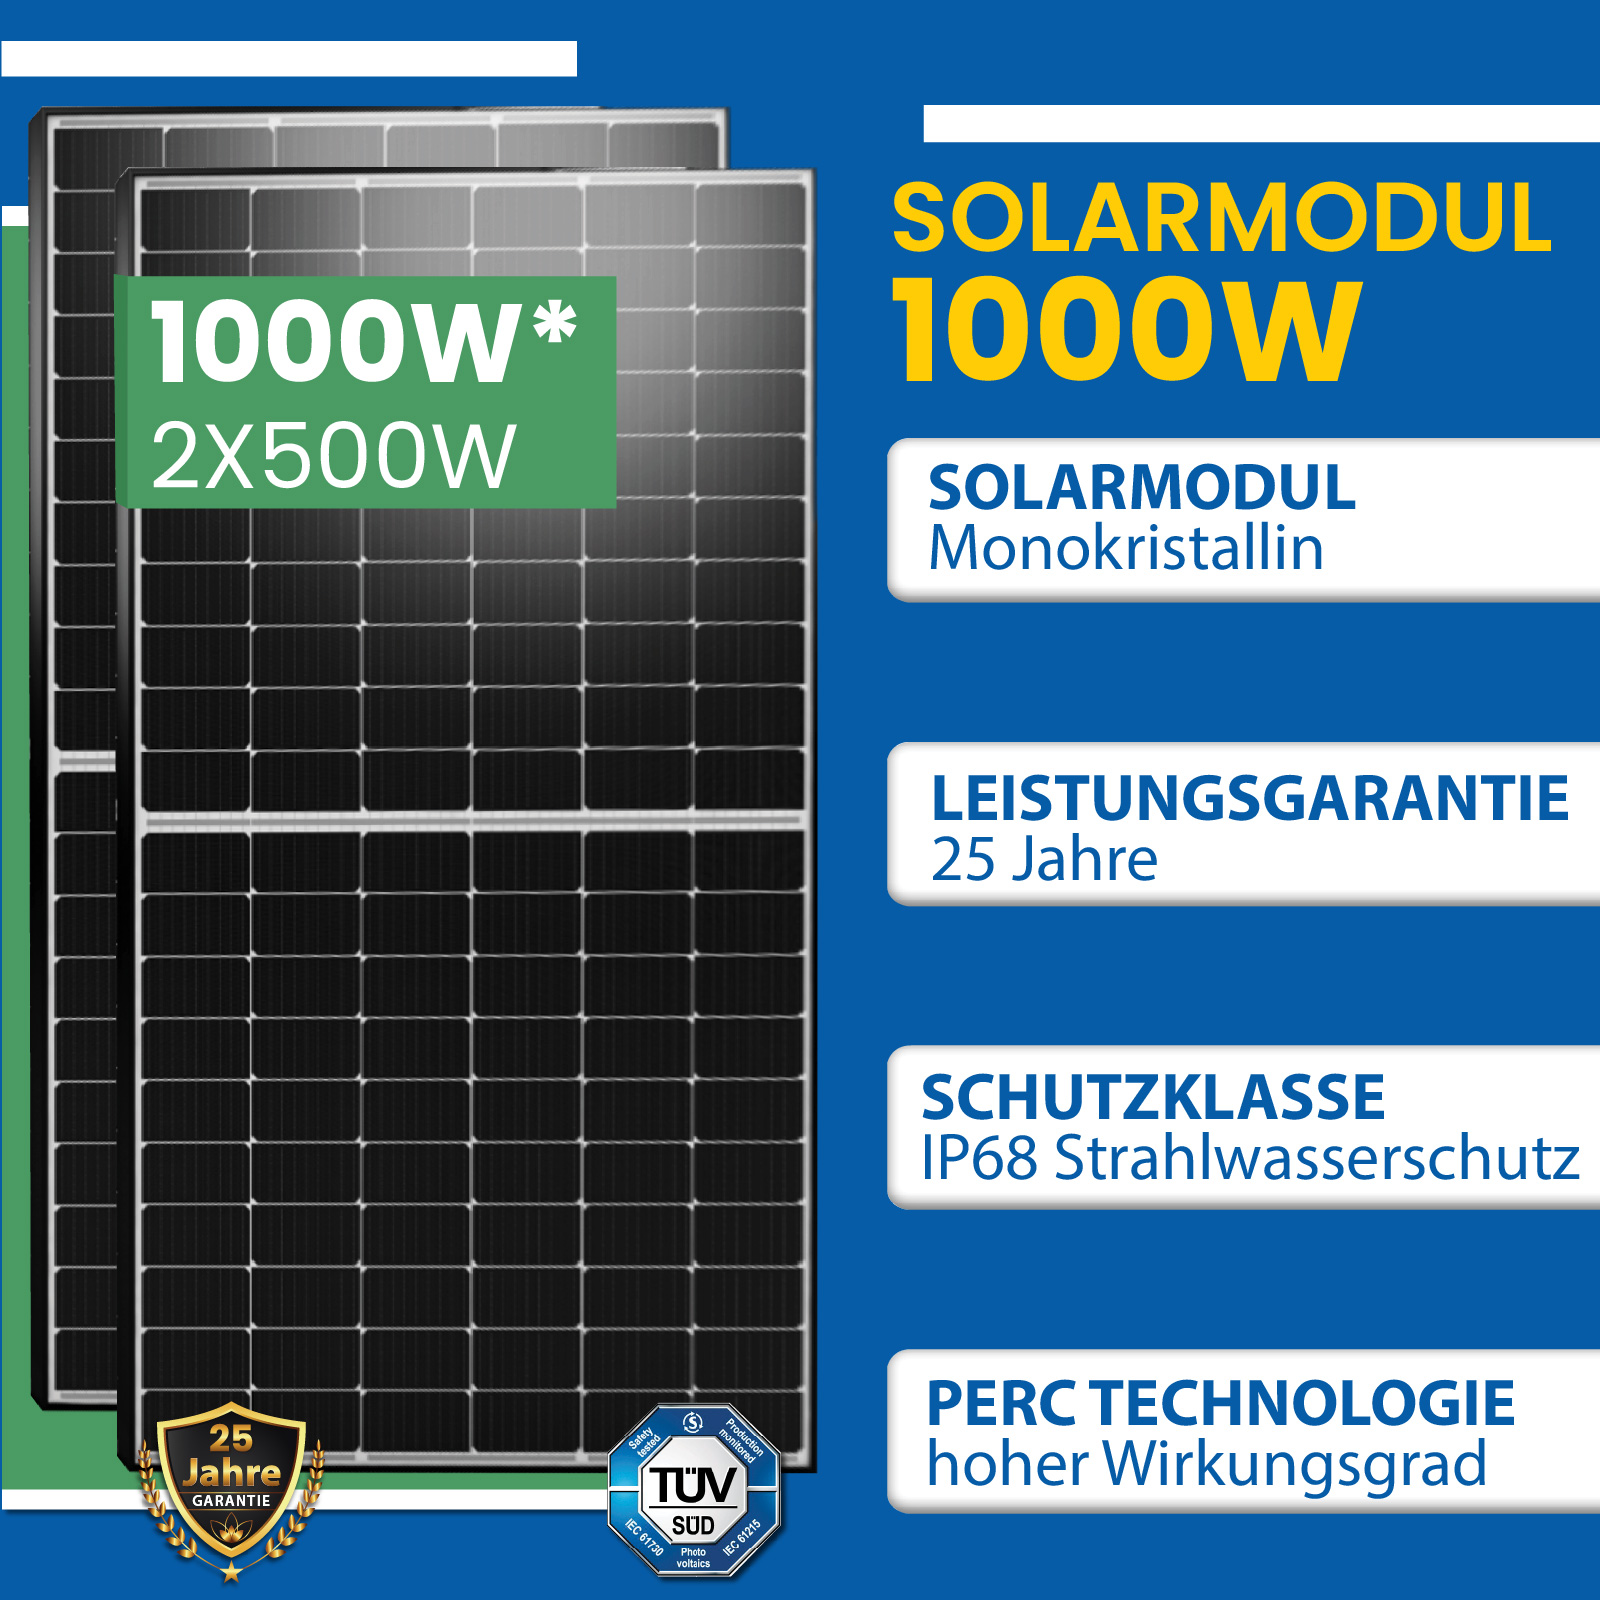 EPP Solar Balkonkraftwerk mit Speicher 1000W, Deye Wechselrichter 800W- PV  anlage mit speicher - epp shop